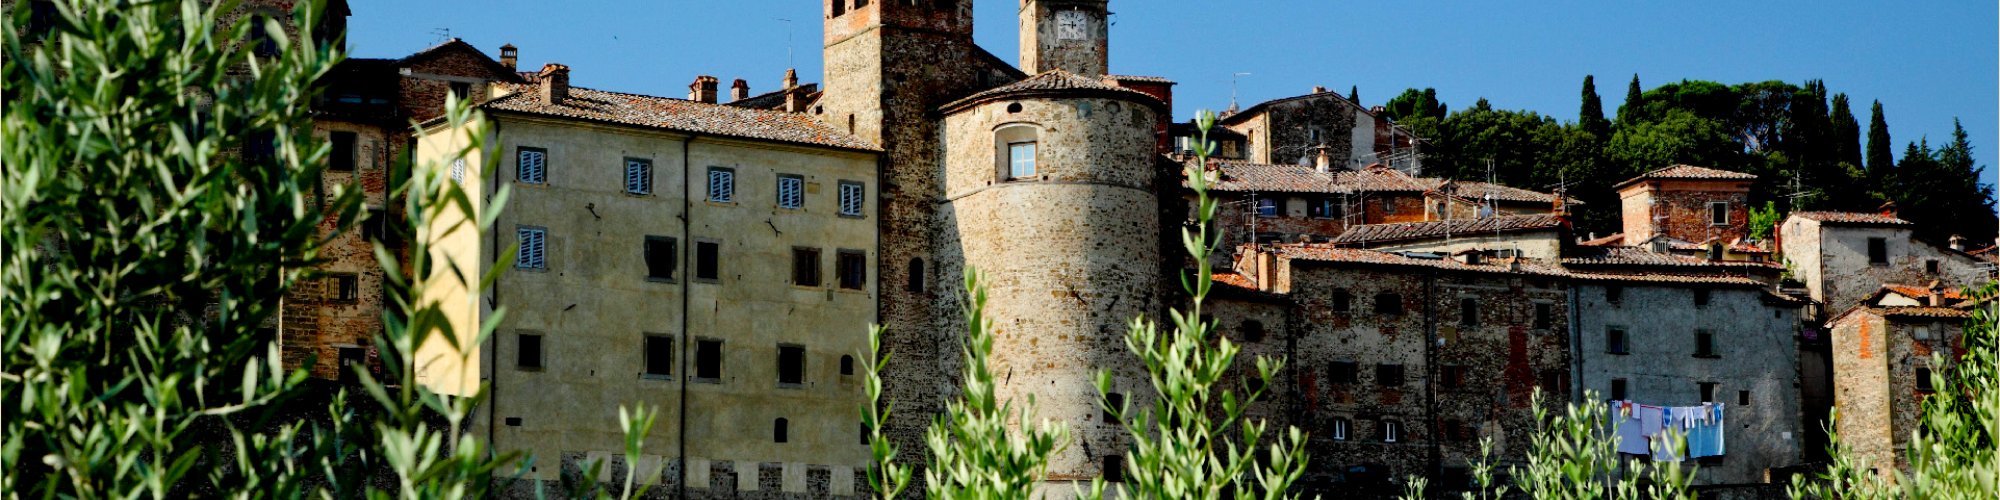 Castello di Anghiari